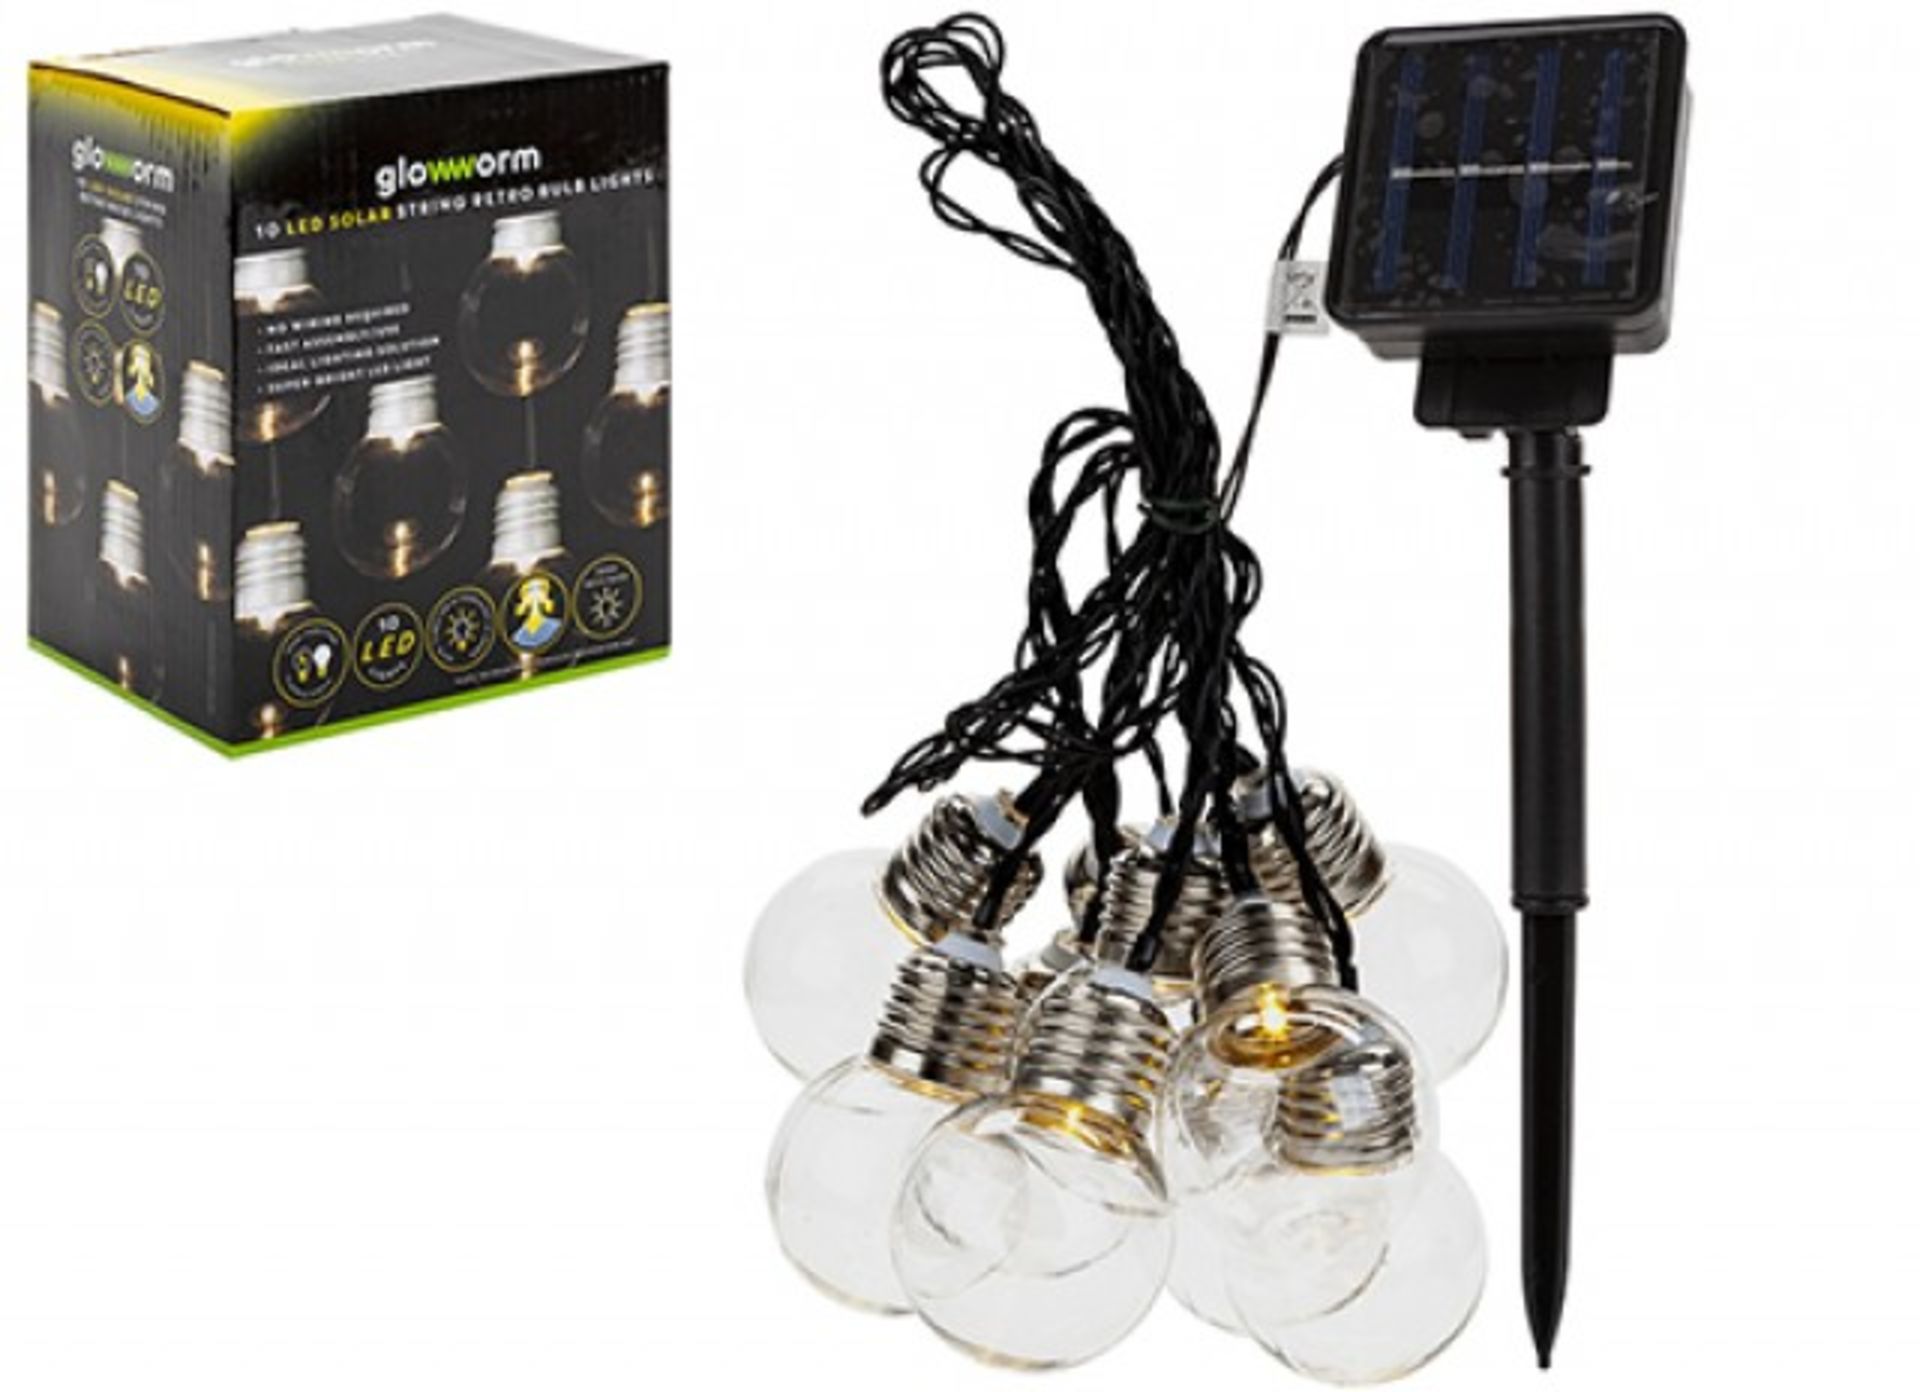 + VAT Brand New 10 LED Solar String Retro Bulb Lights - Warm White Bulbs - Super-Bright Led Light